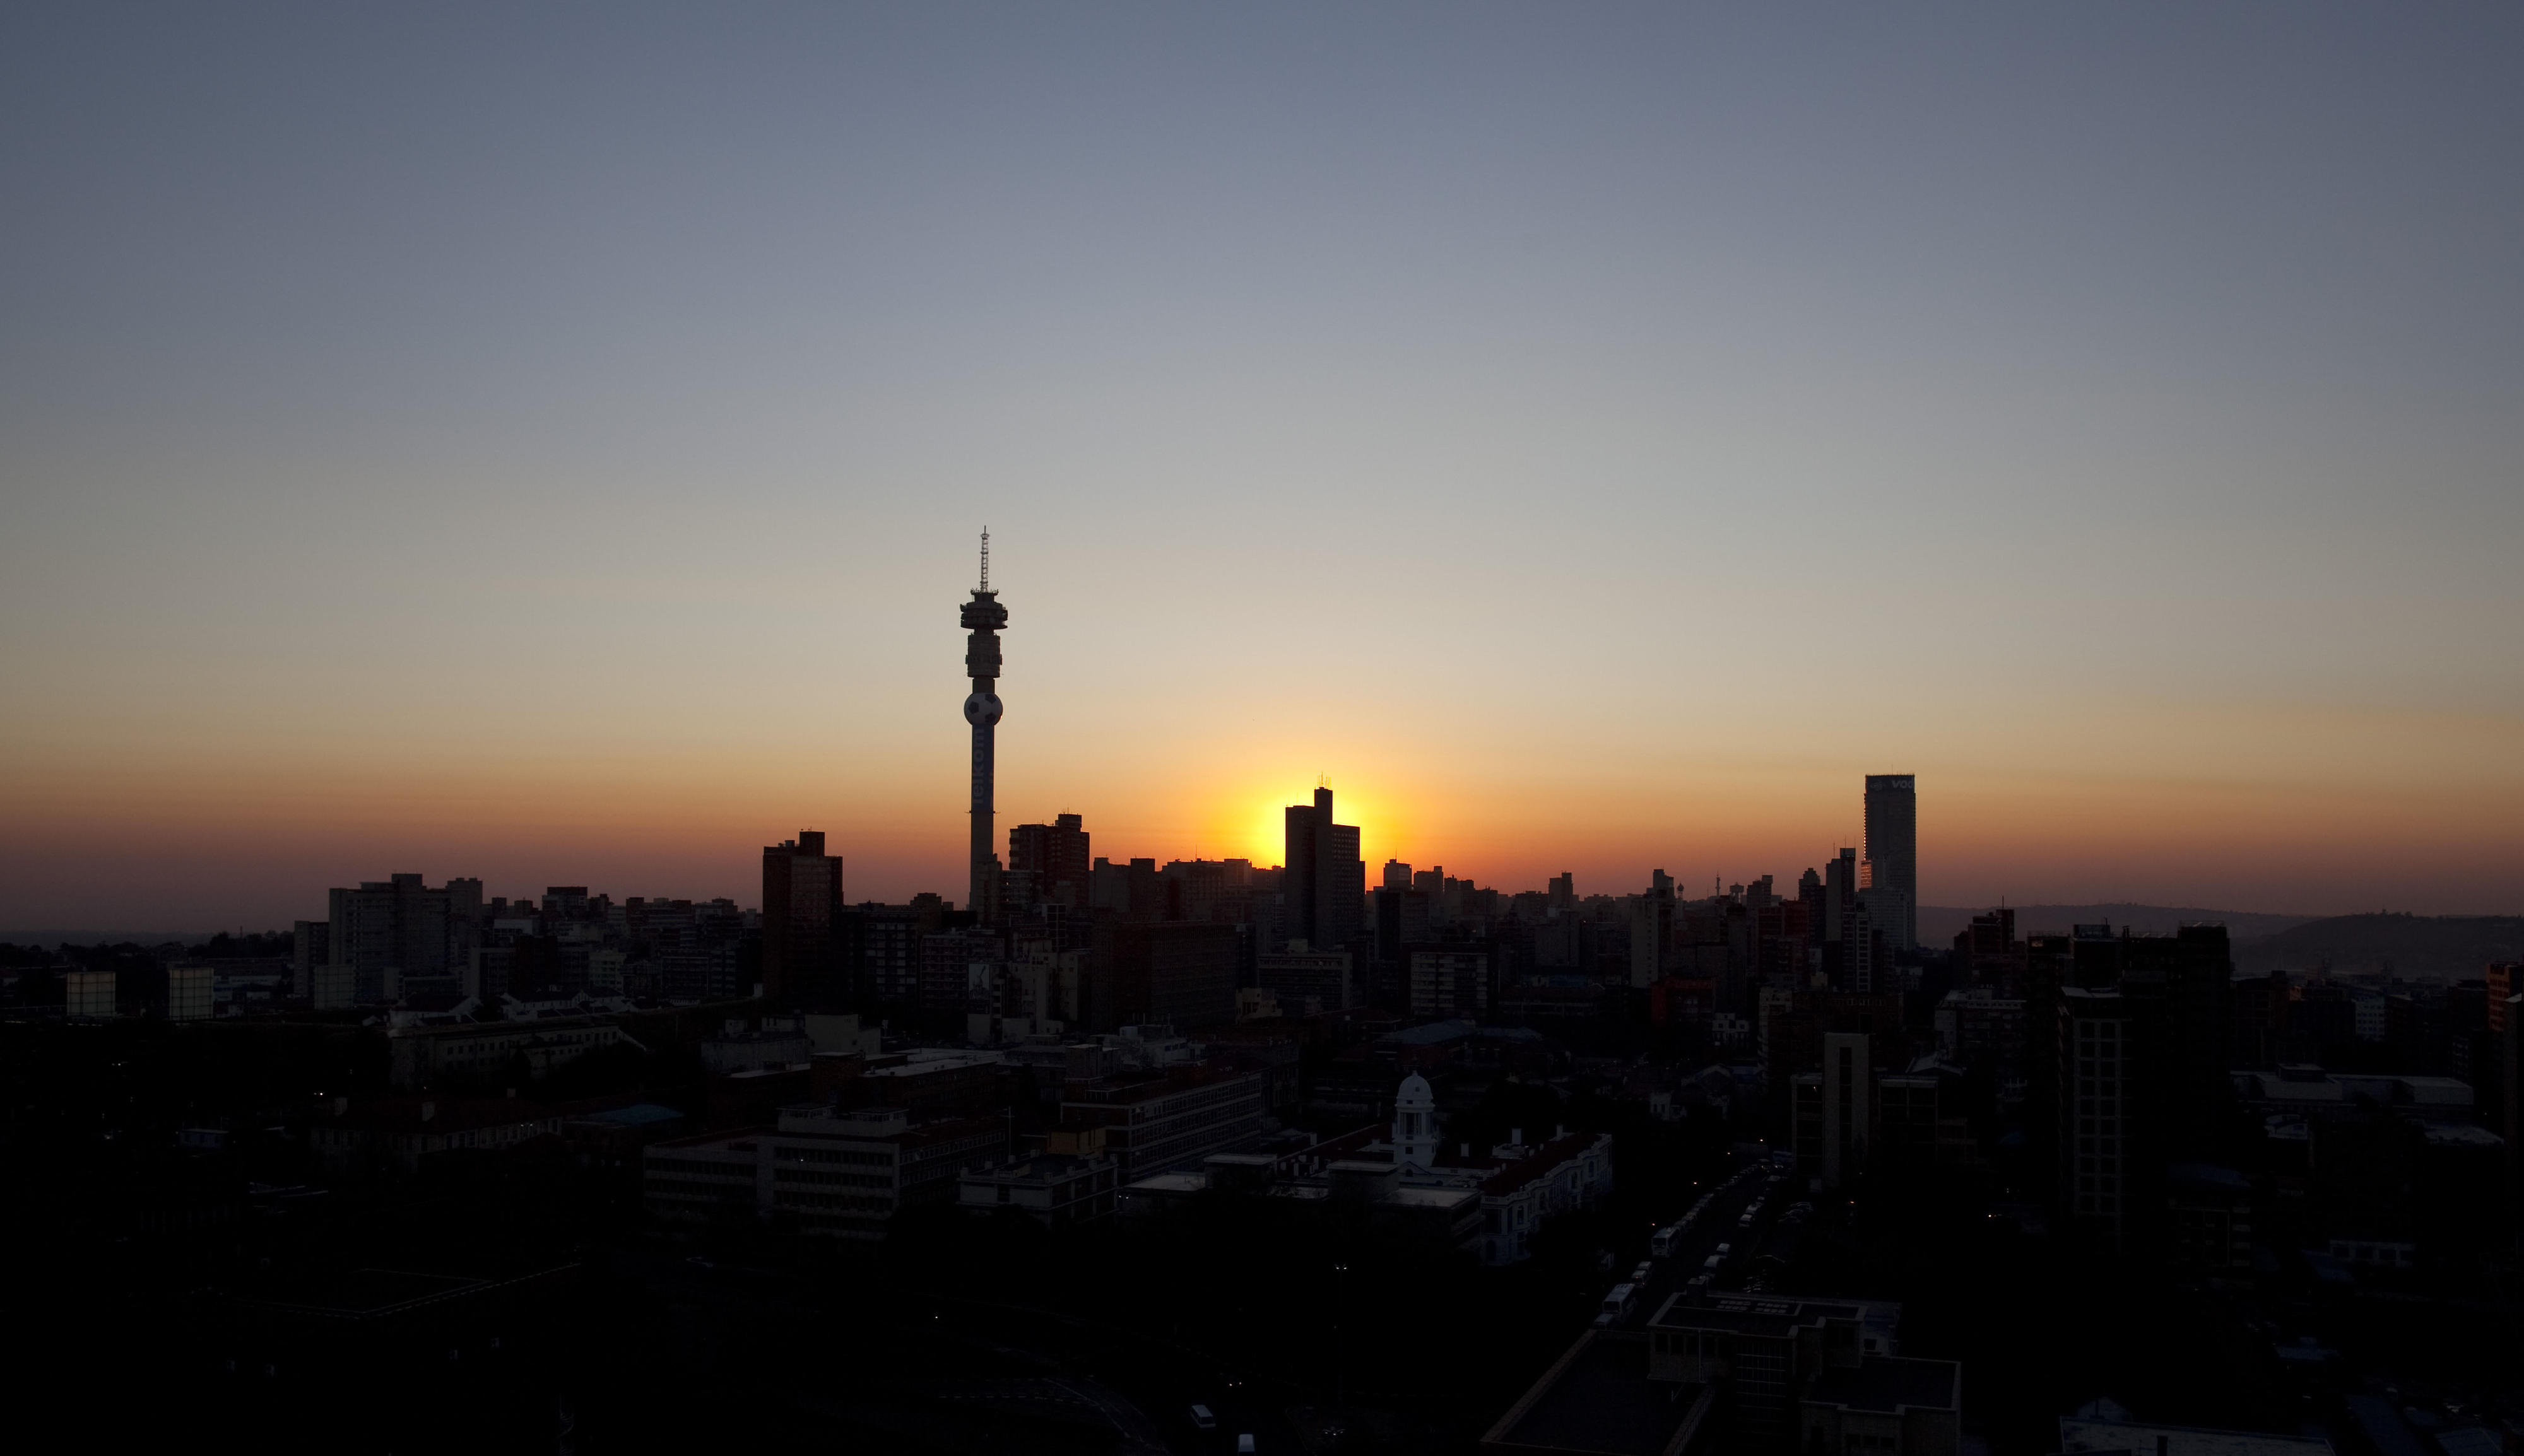 Sunrise in Johannesburg